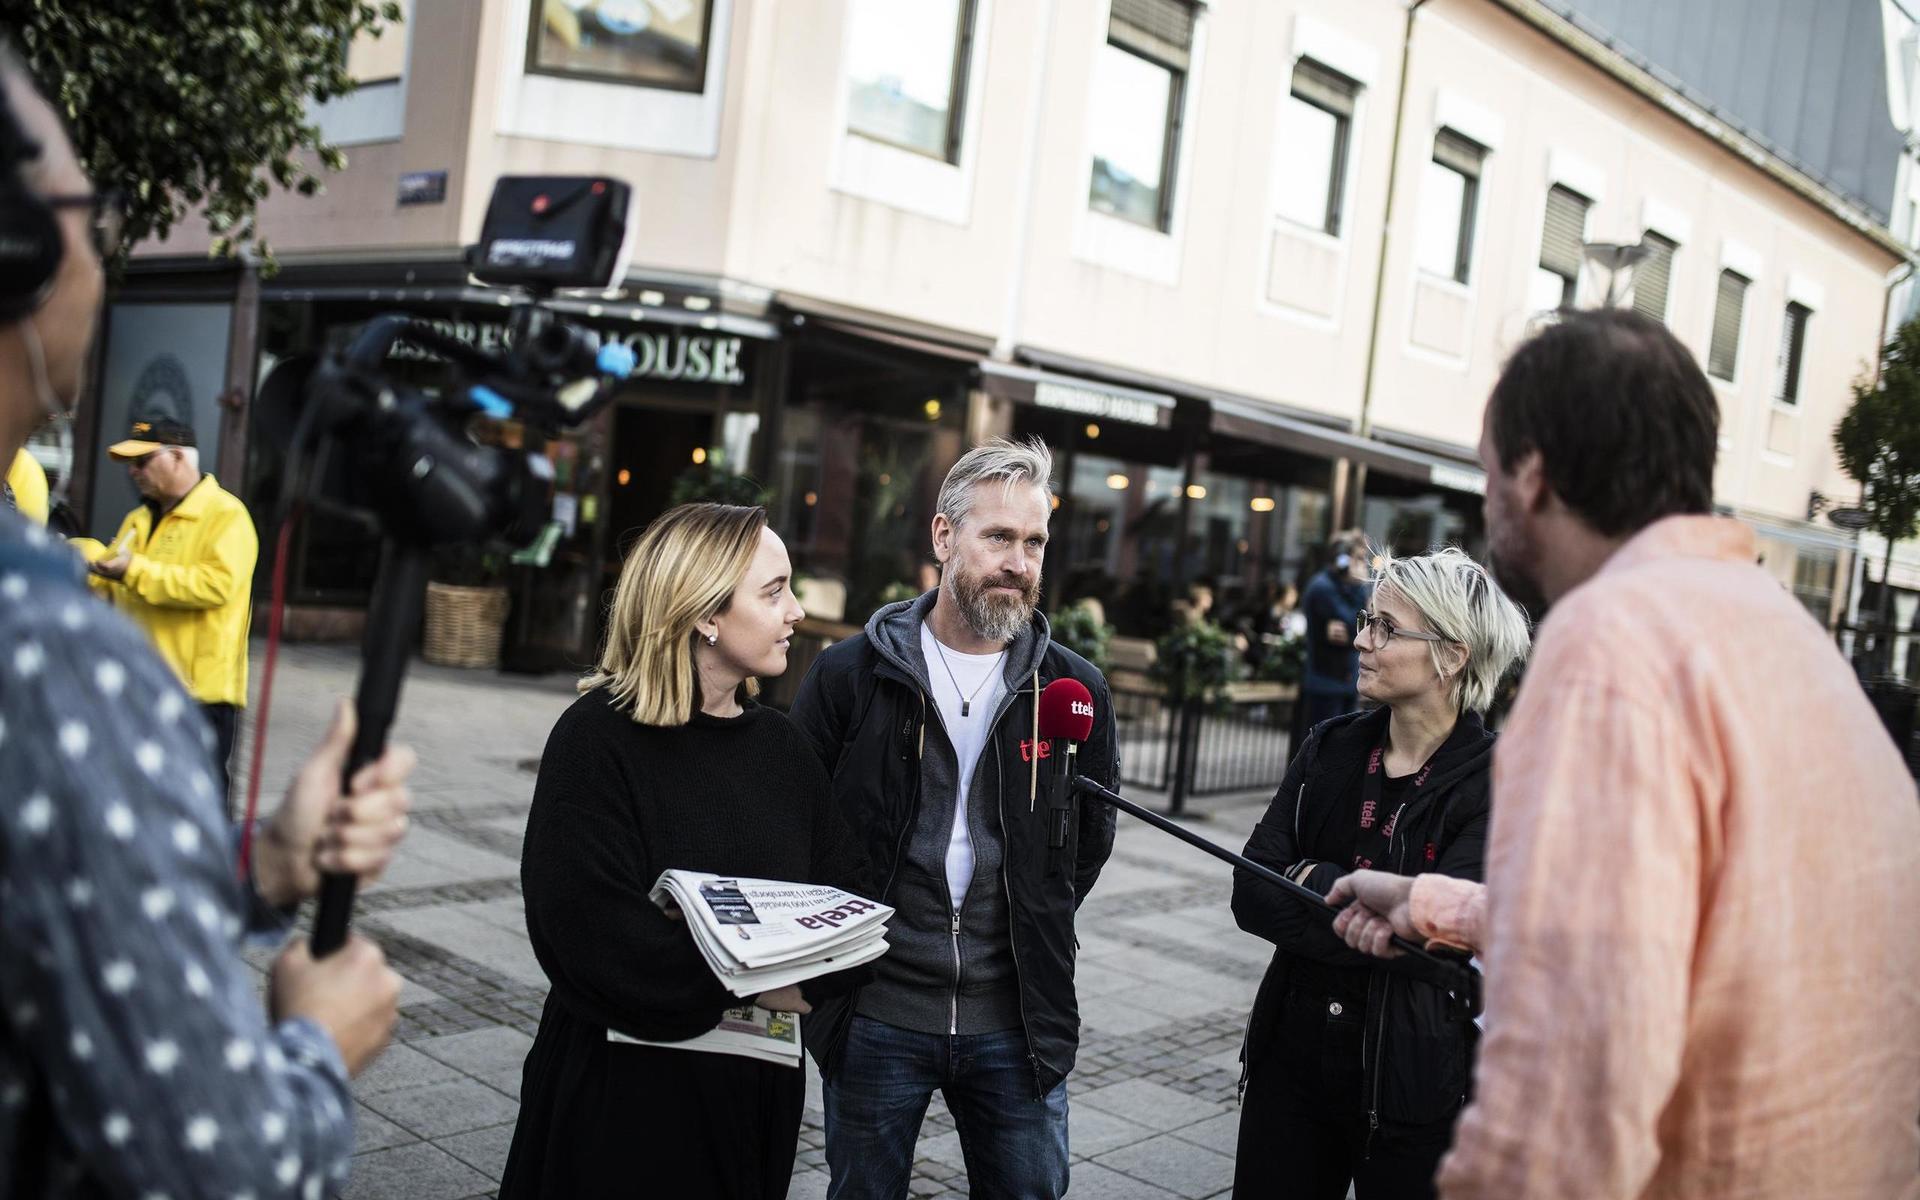 TTELA:s reportrar i Vänersborg, Lovisa Meijer, Niklas Johansson och Annie Granzell intervjuas i sändning. 